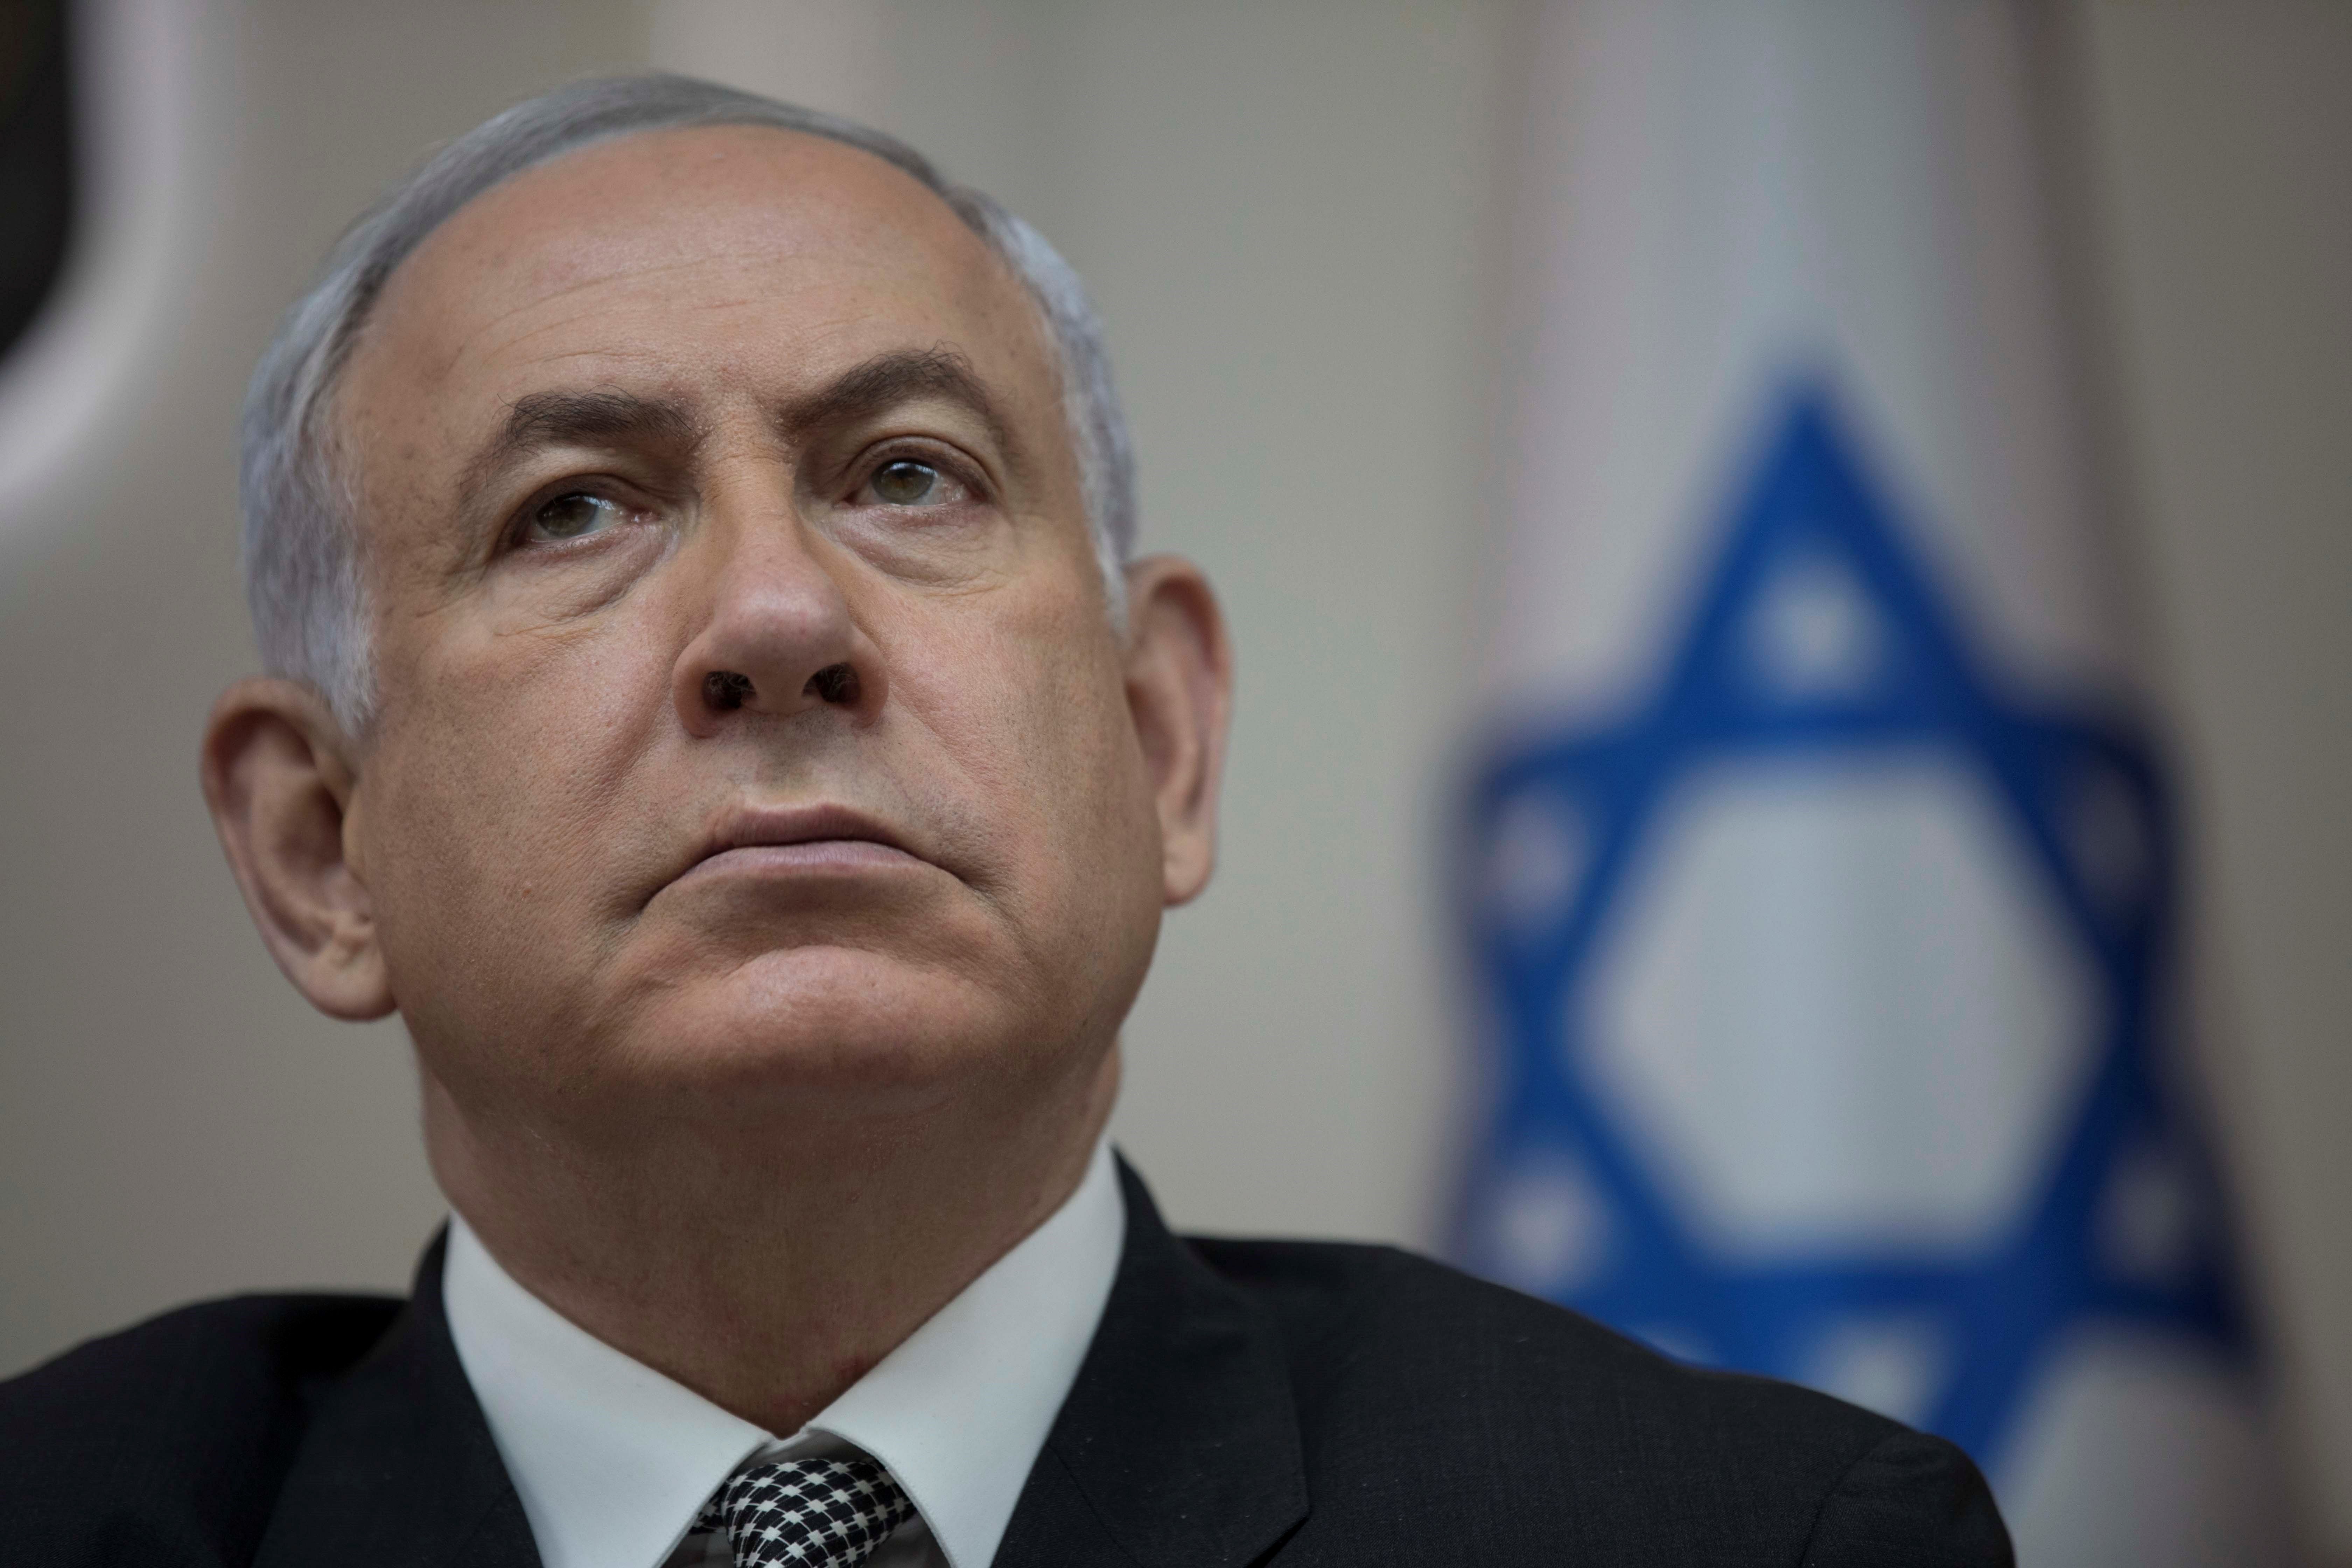 VÍDEO| Netanyahu com mai l'havies vist (i acaba malament)